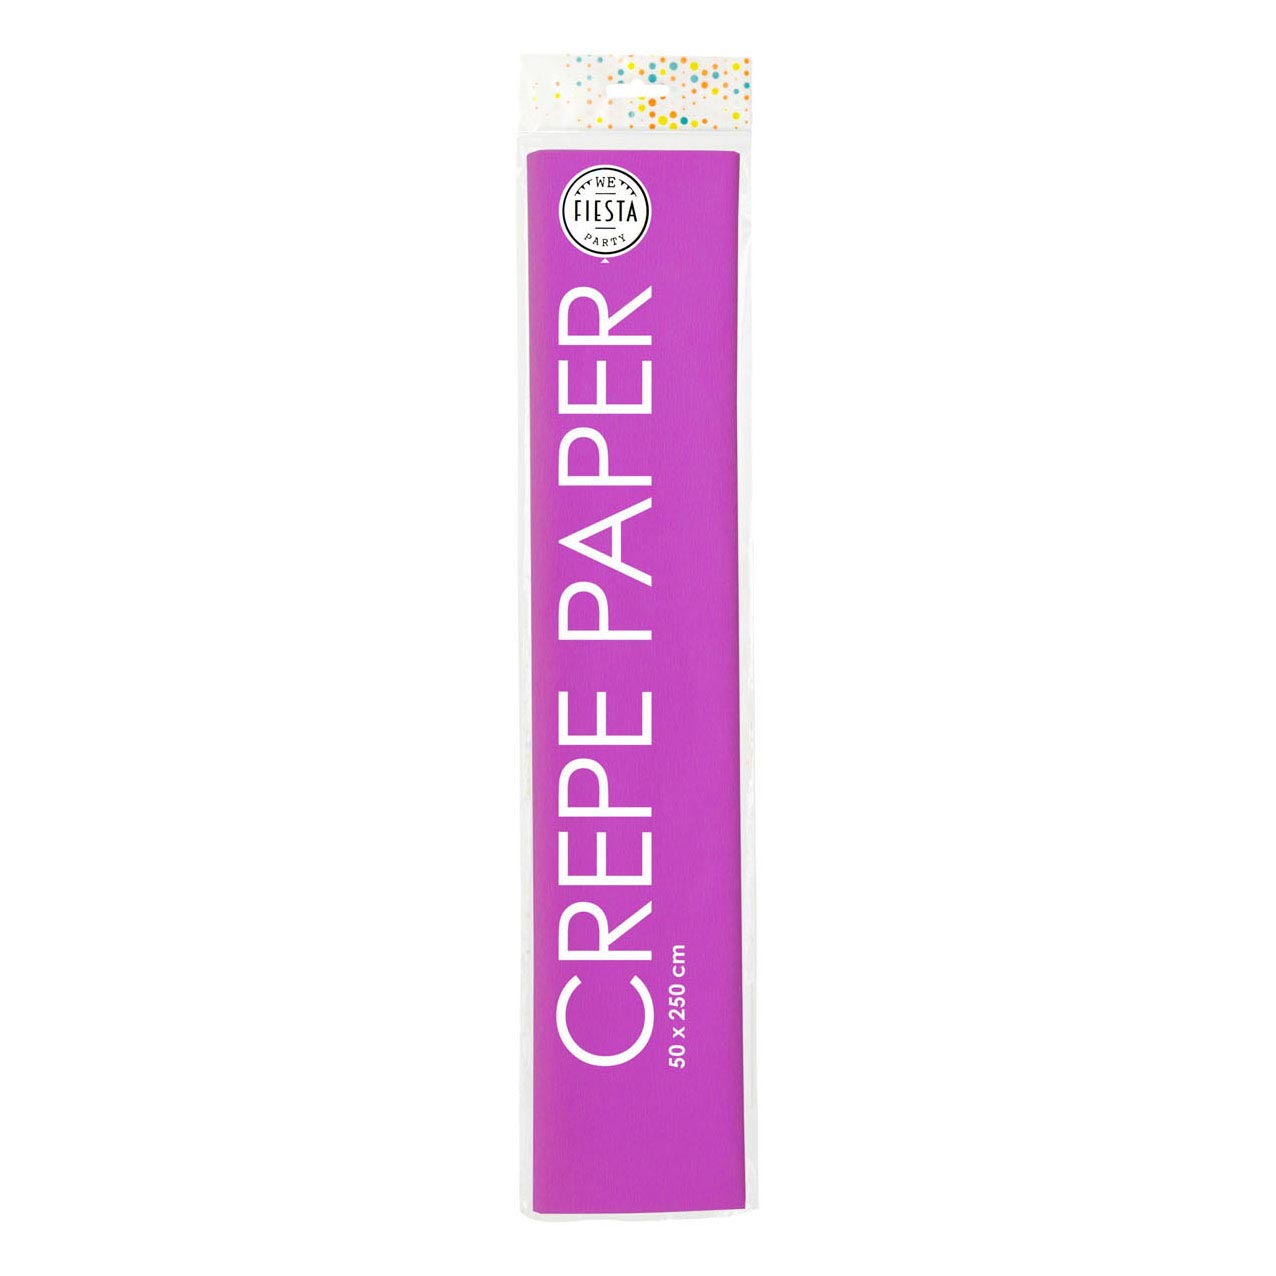 Crepepapier Violet, 50x250cm